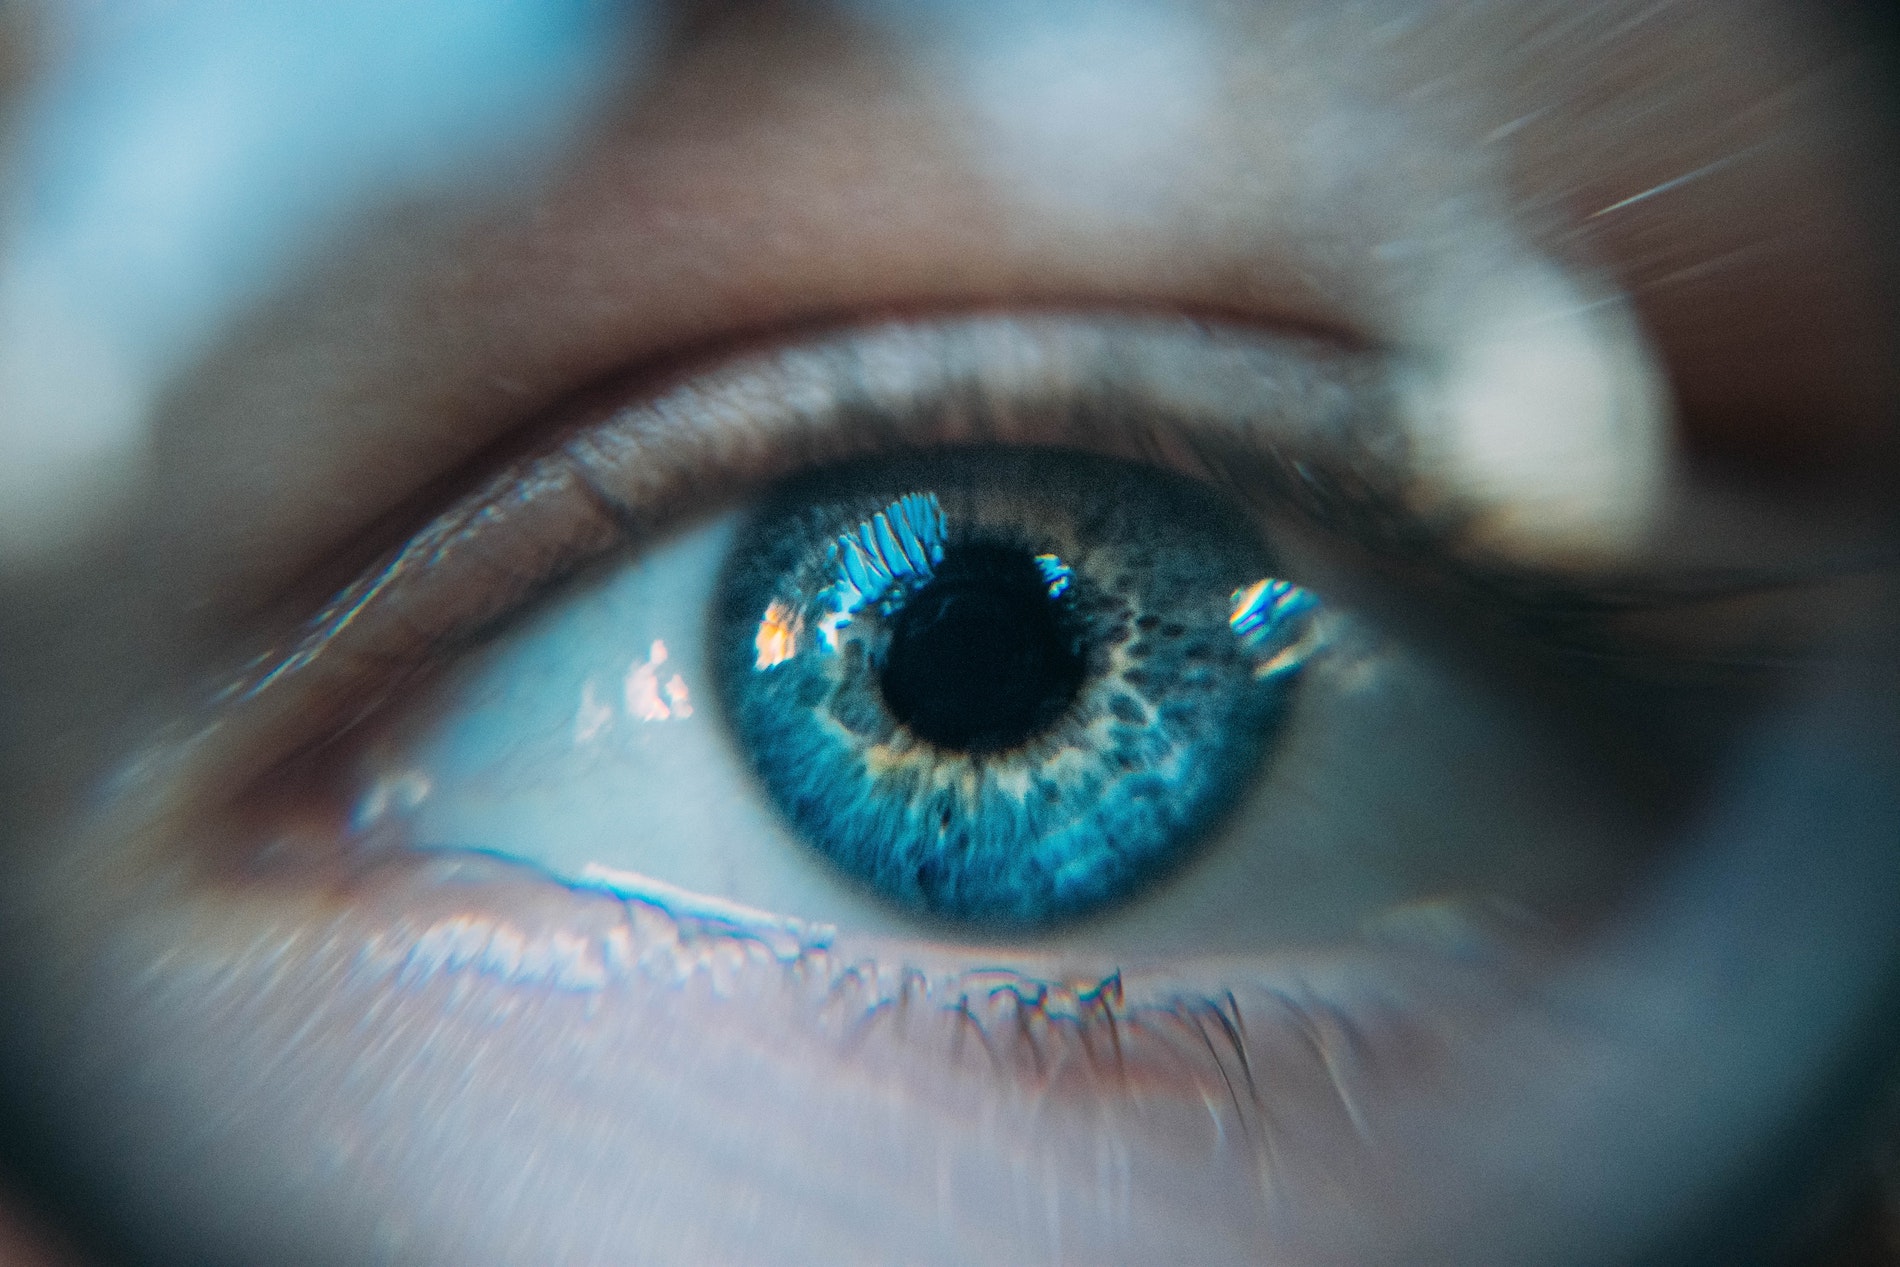 Genetique yeux : les points importants à savoir